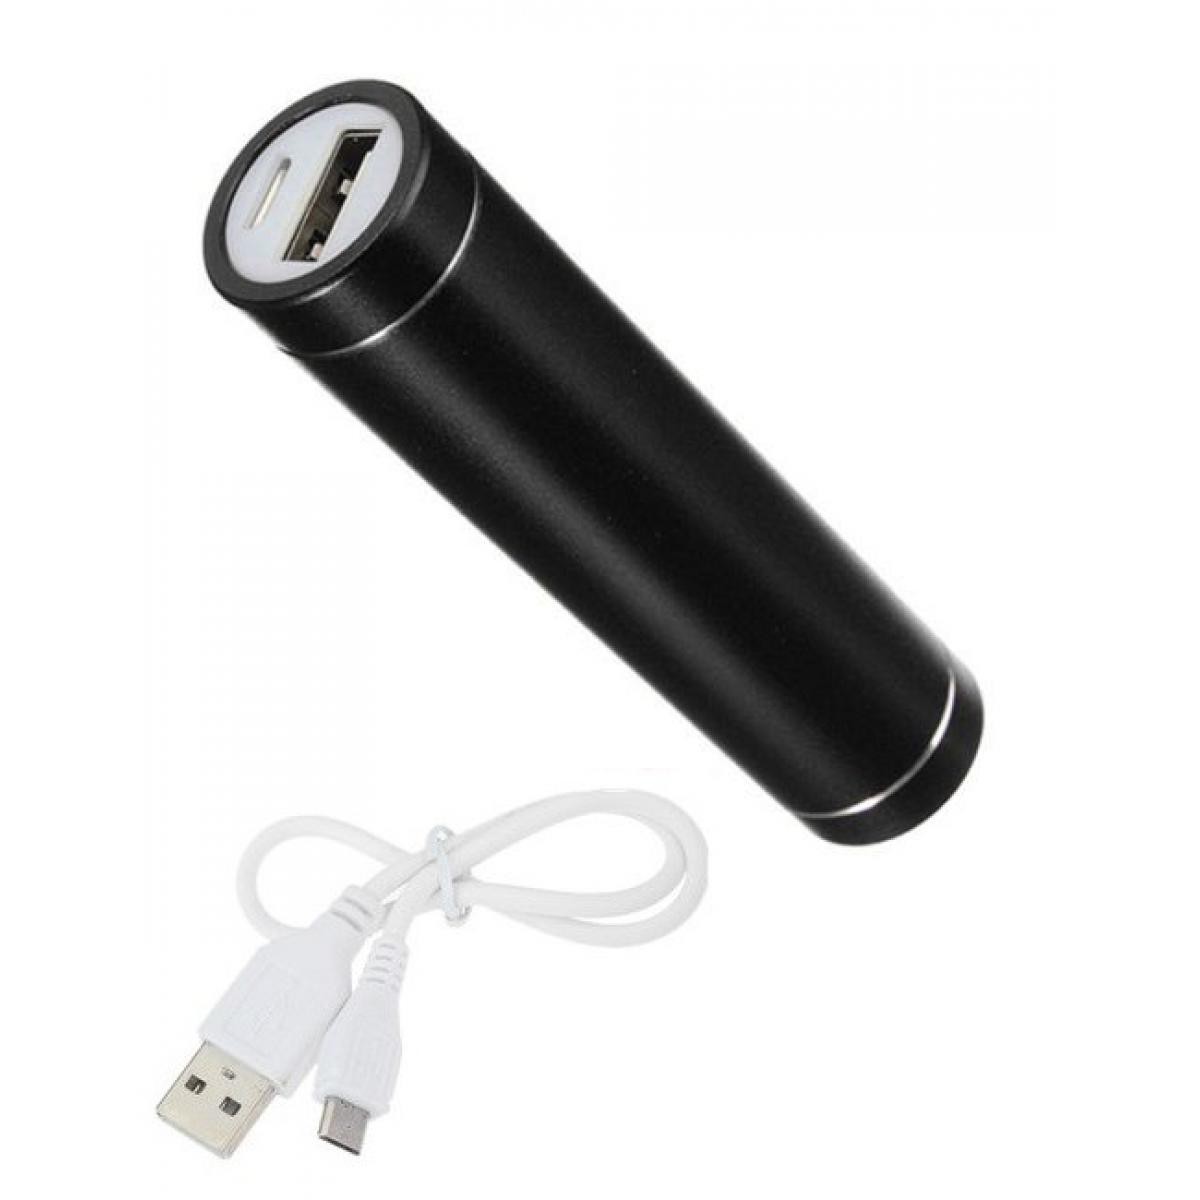 Shot - Batterie Chargeur Externe pour "OPPO Find X2 Lite" Power Bank 2600mAh avec Cable USB/Mirco USB Secours Telephone (NOIR) - Chargeur secteur téléphone